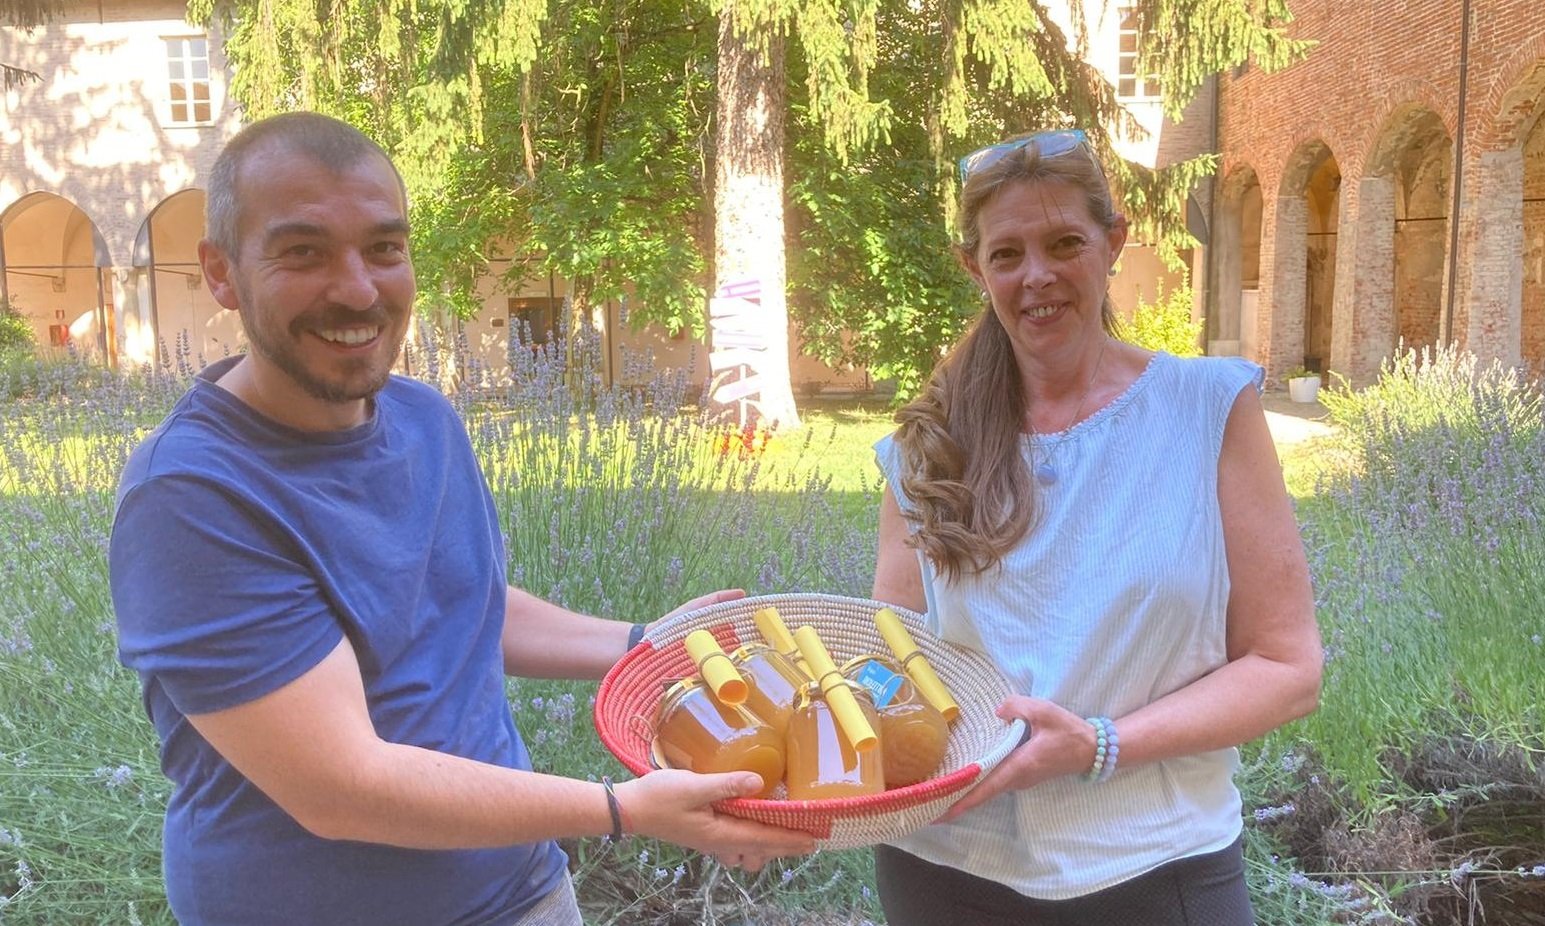 Associazione Cambalache vicina alle famiglie di Alessandria in difficoltà: donati 11 chili di miele